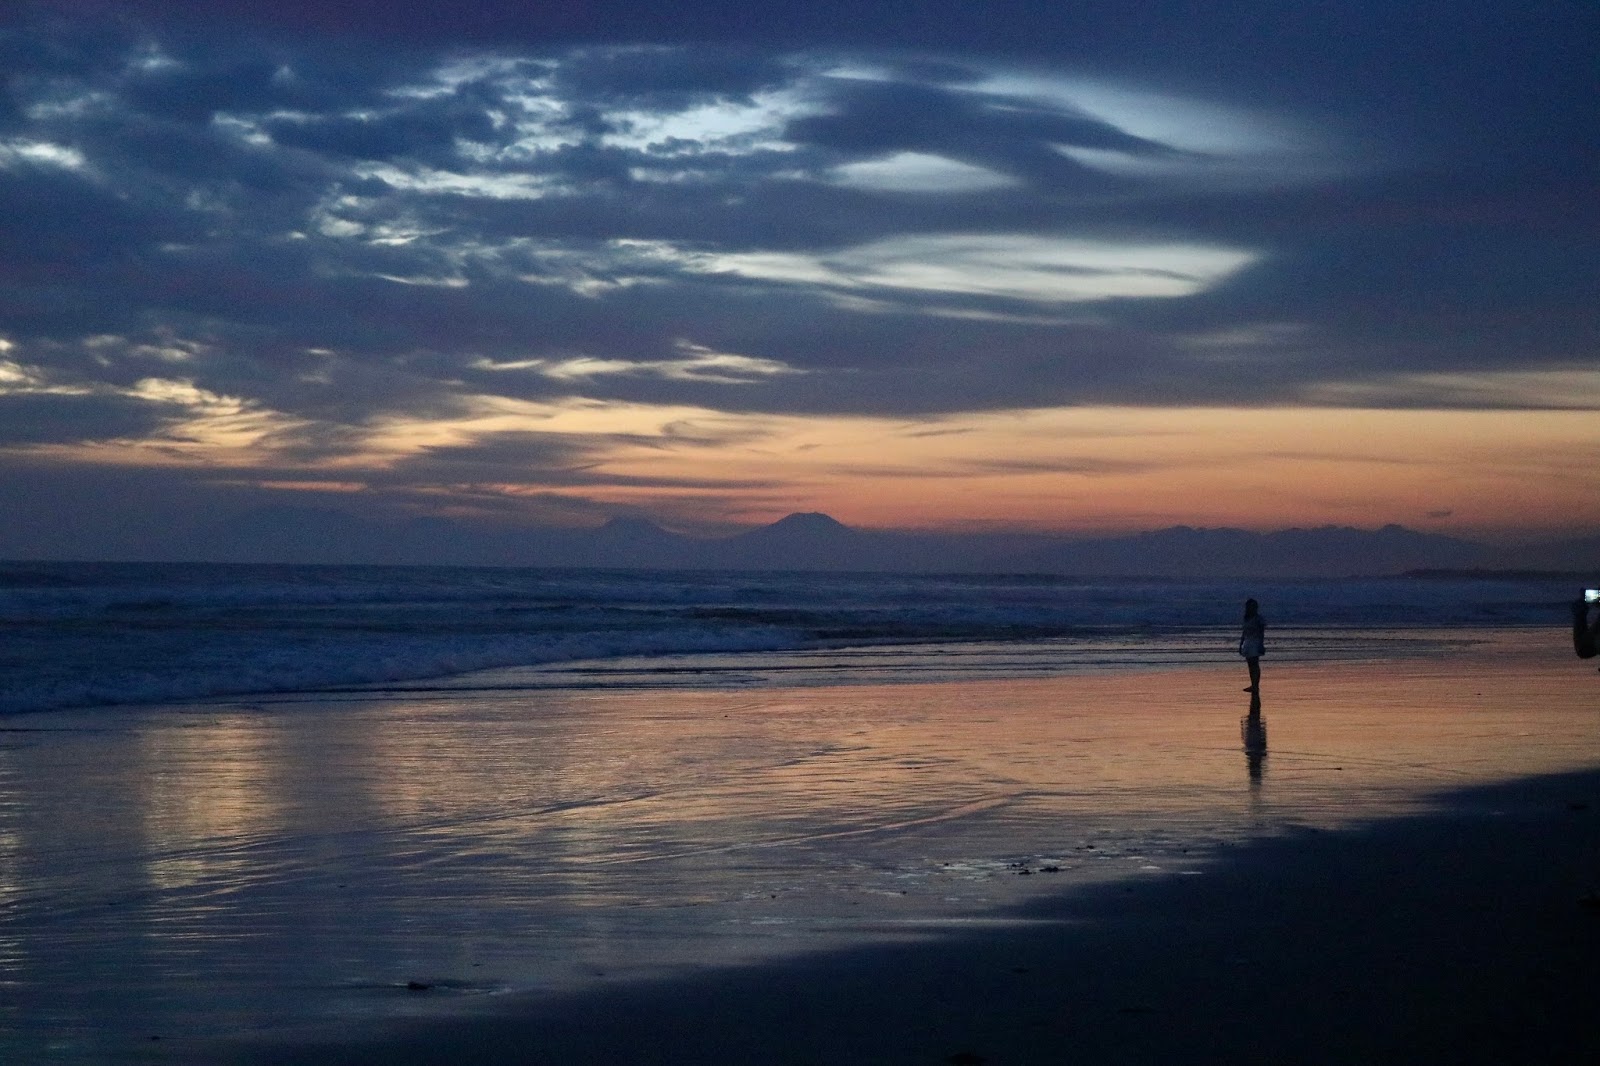 Sunset at Seminyak, Bali